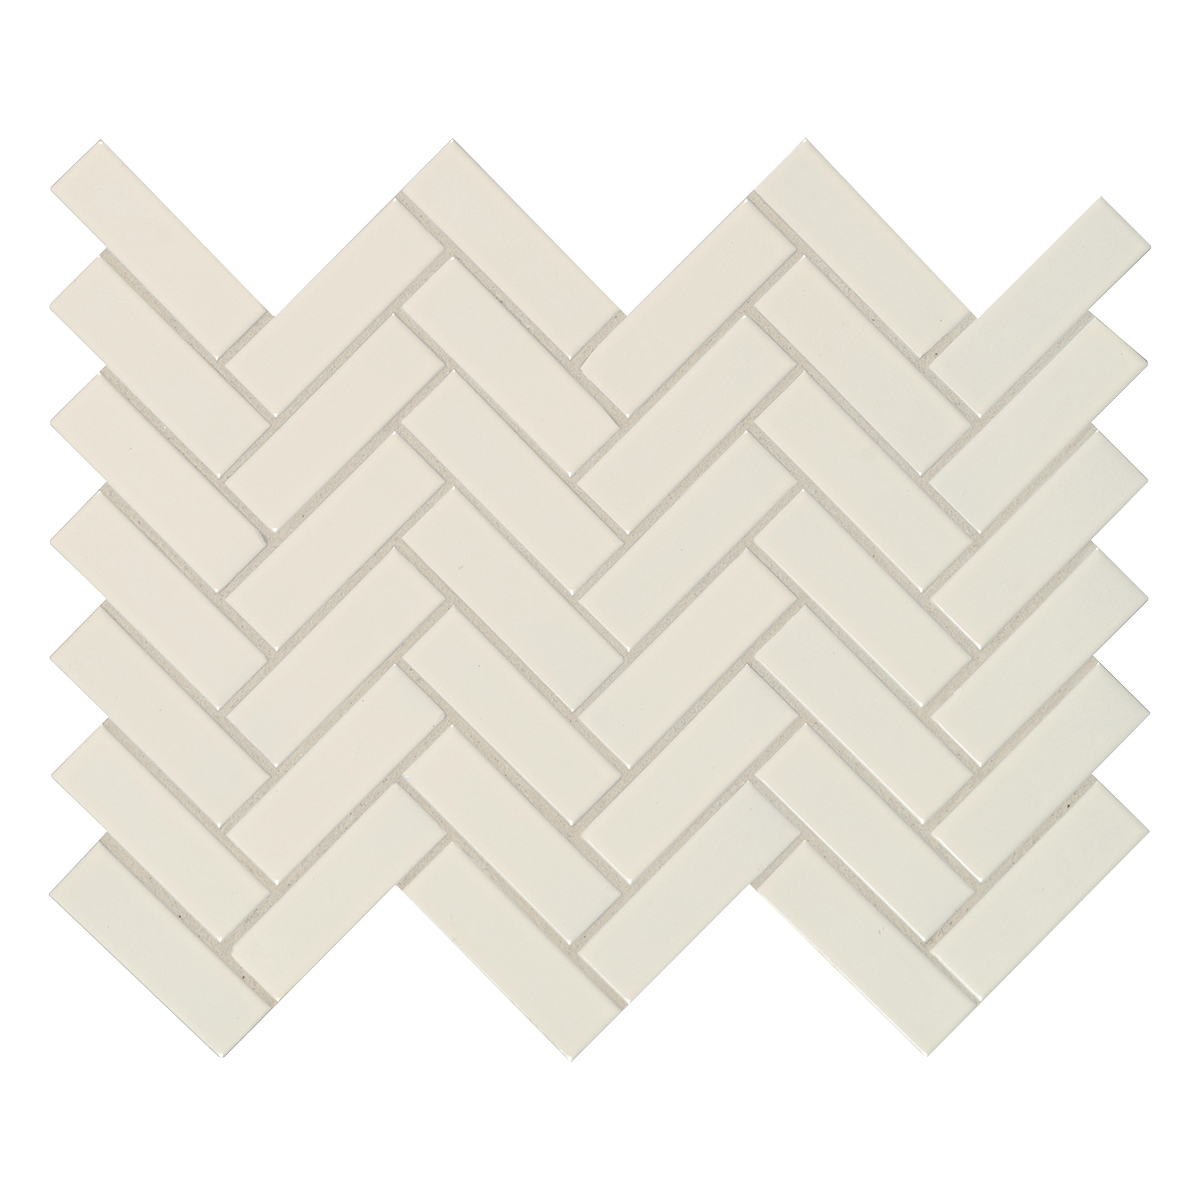 Almond Glossy Herringbone 11.45X12.63 Porcelain Mosaic Tile-3